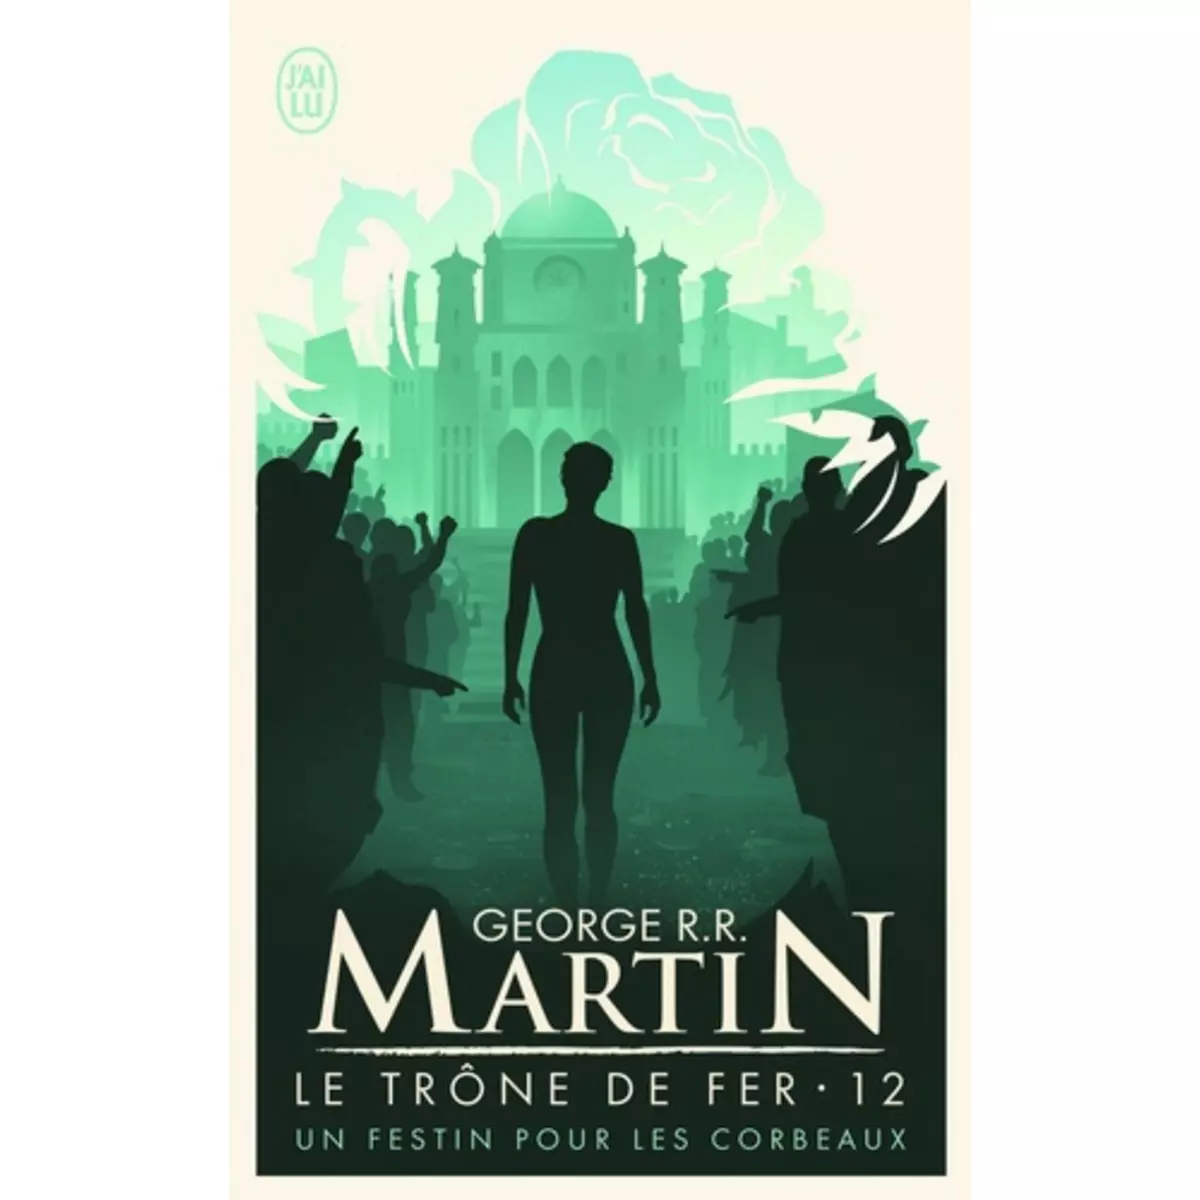  LE TRONE DE FER (A GAME OF THRONES) TOME 12 : UN FESTIN POUR LES CORBEAUX, Martin George R. R.